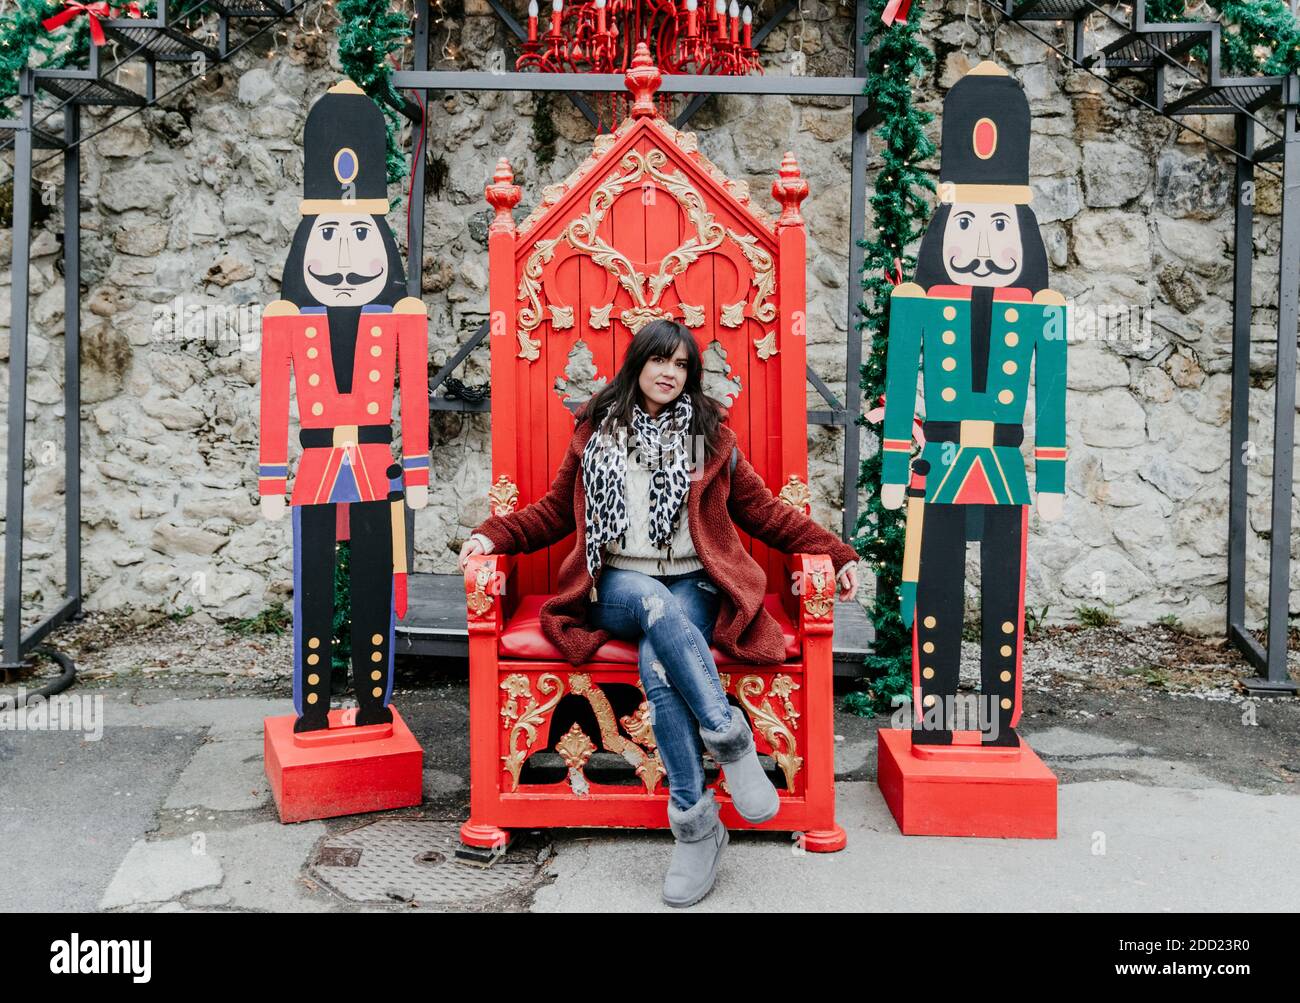 Ein Porträt einer jungen kaukasischen Frau, die auf einem sitzt Roter Stuhl inmitten der Dekoration Stockfoto